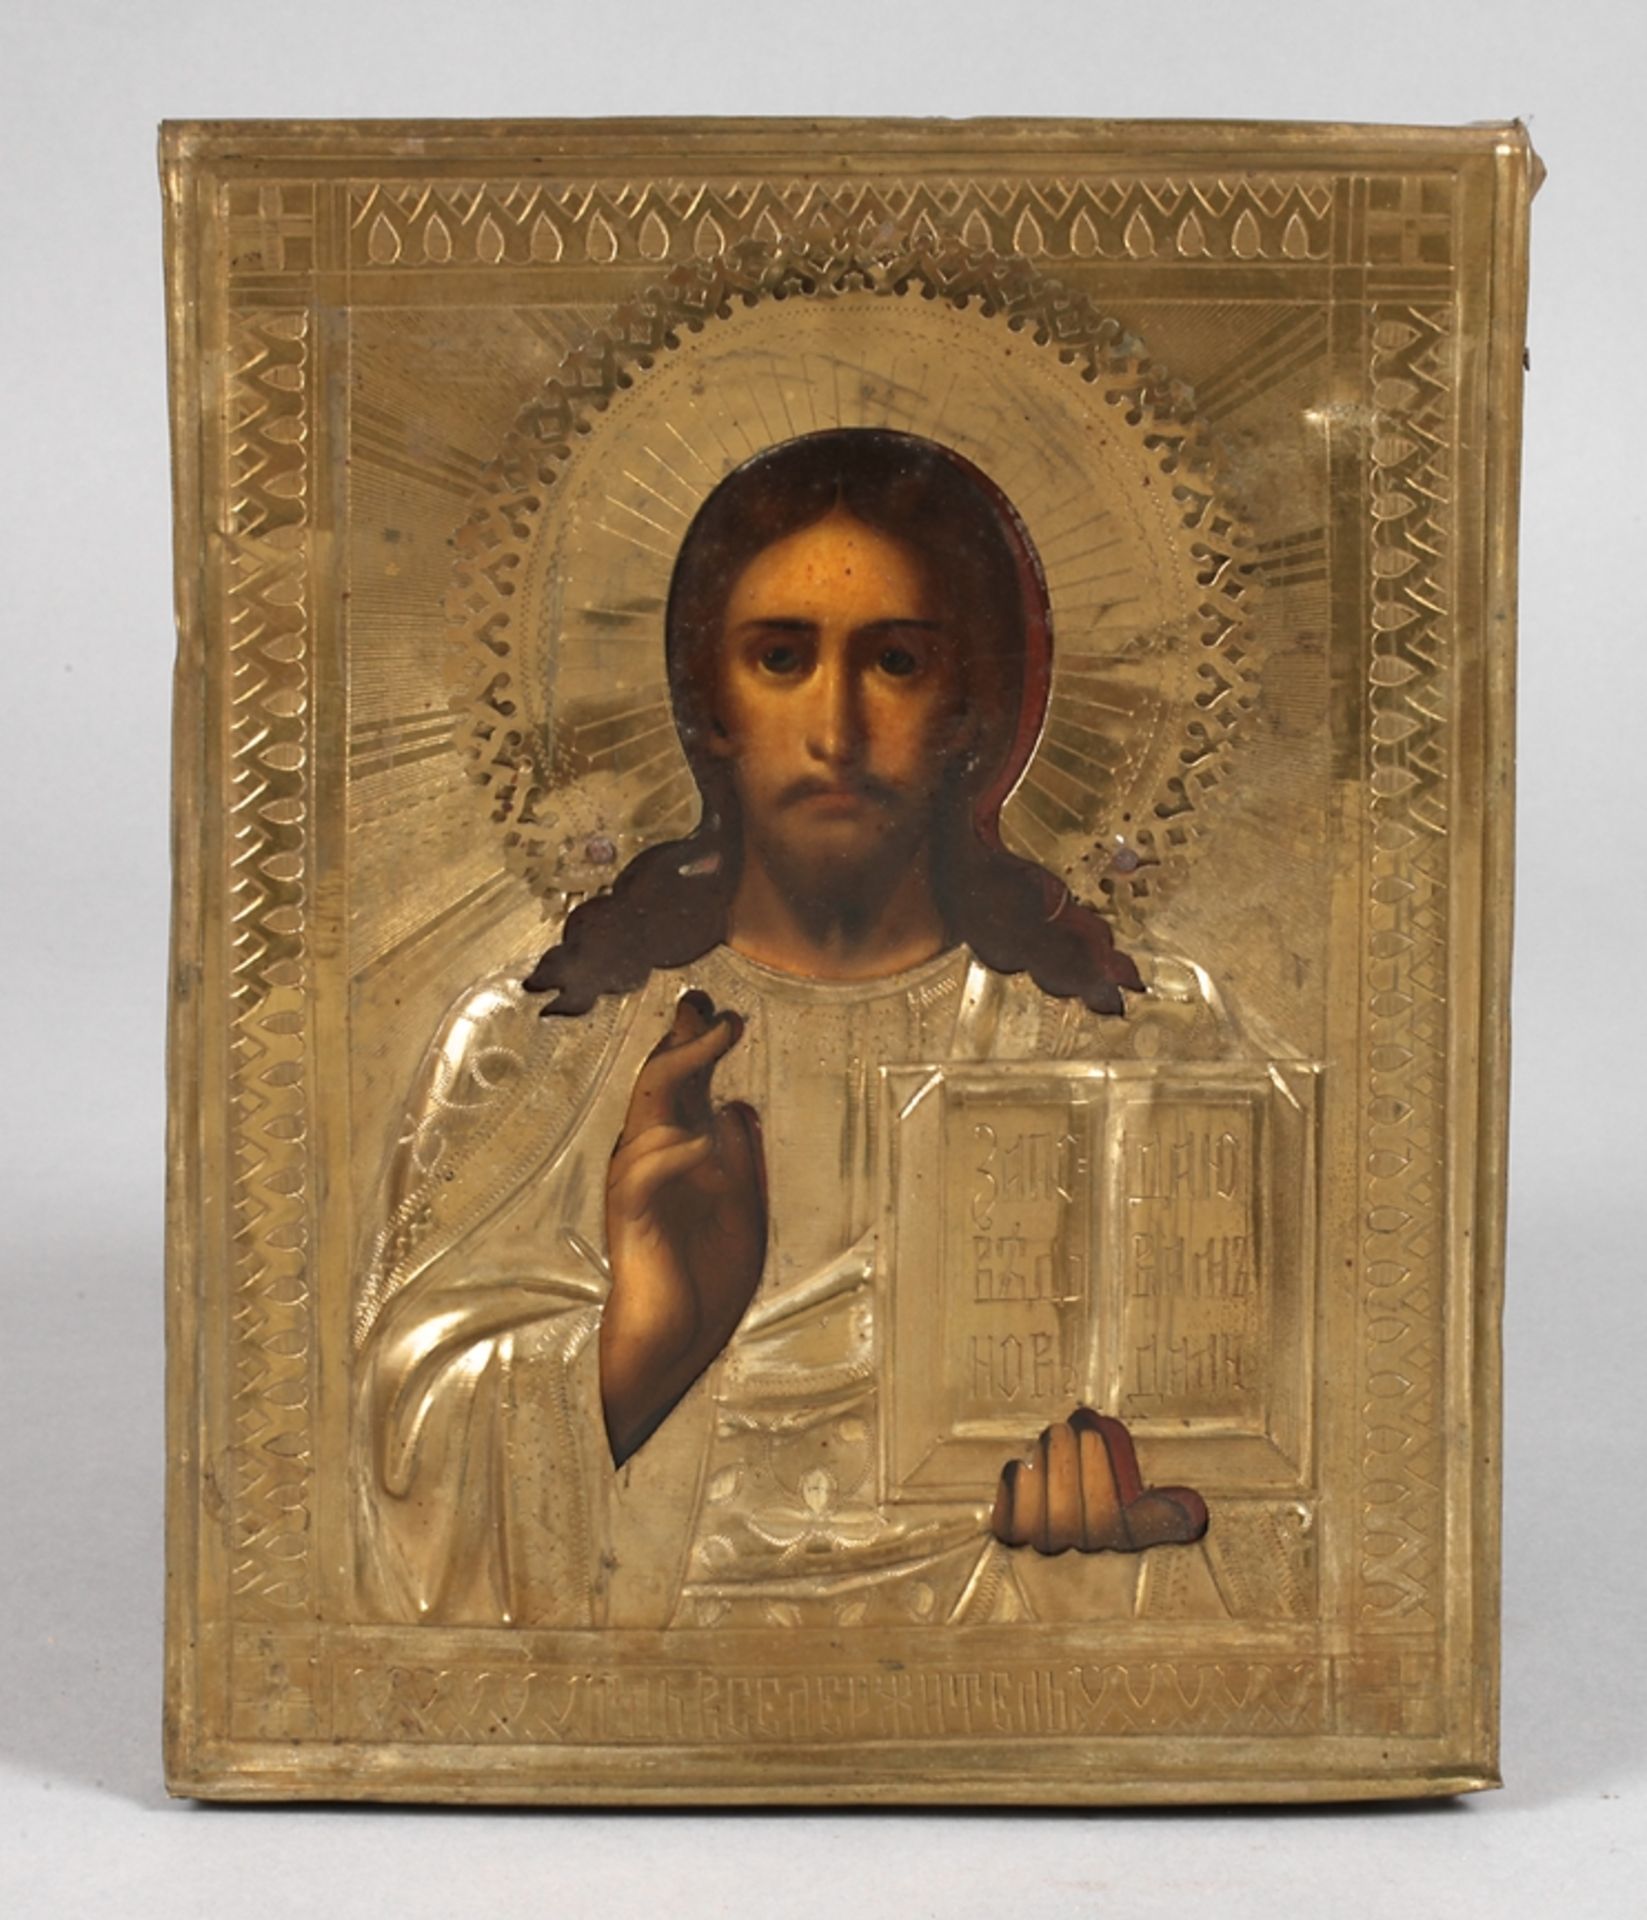 Ikone Christus Pantokrator19. Jh., kirchenslawisch bezeichnet, Tempera auf Nadelholzplatte,